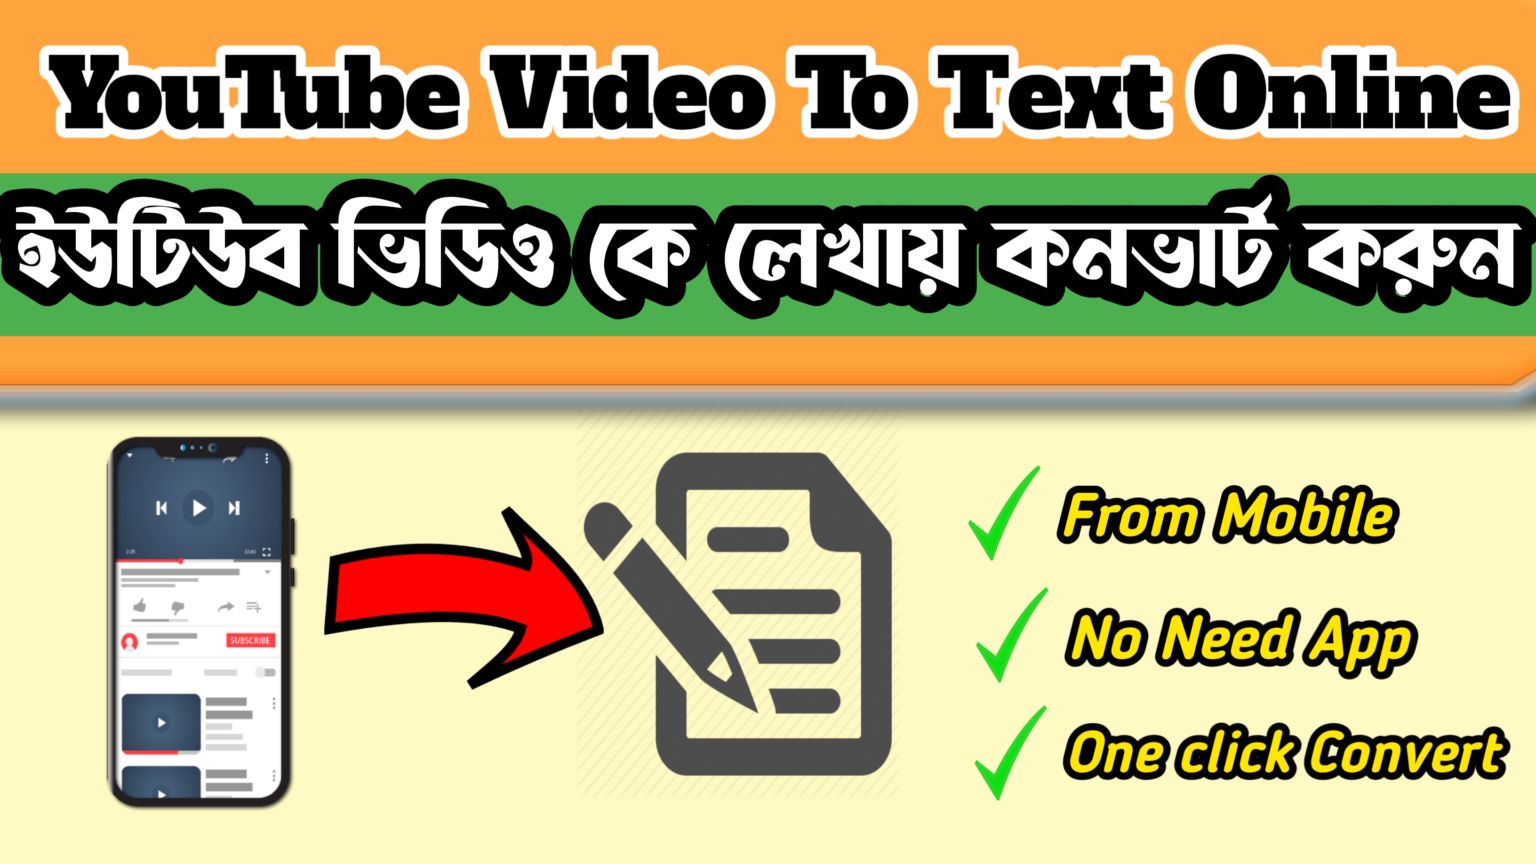 মোবাইল থেকে ইউটিউব সহ যেকোন ভিডিও লেখাই কনভার্ট করুন মুহুর্তের মধ্যে (নতুন ওয়েবসাইট) || How to Convert Youtube Video To Text File on Mobile 2021